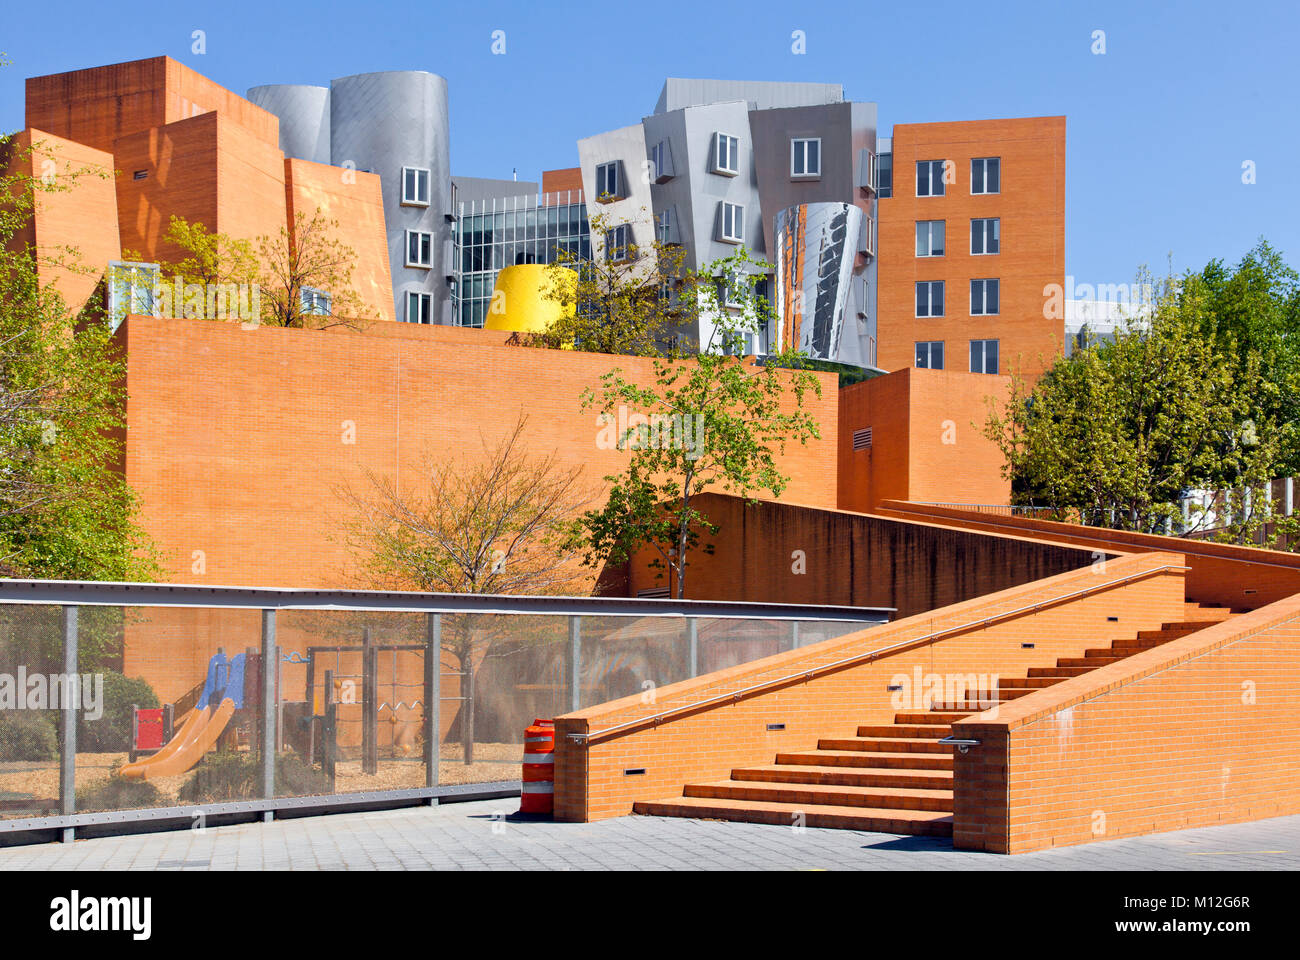 MIT Stata Center von dem Architekten Frank Gehry in Cambridge, MA ausgelegt. Stockfoto